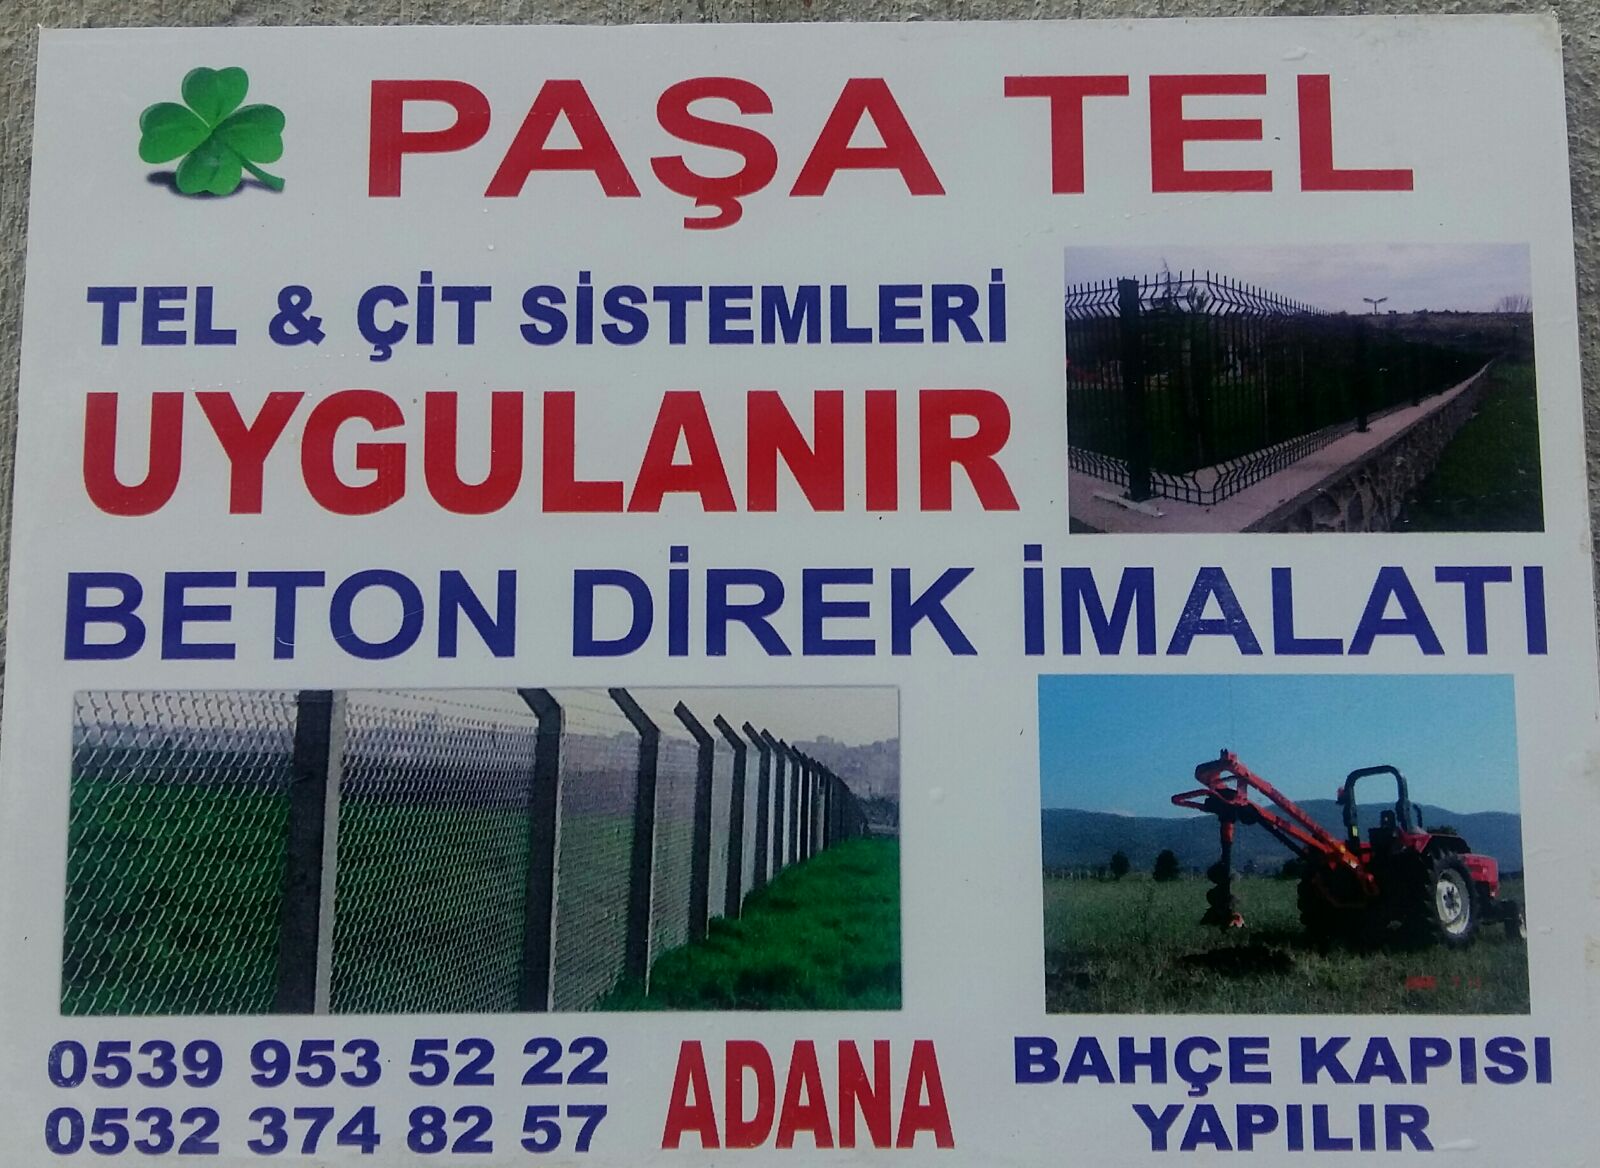 Aktel Adana Panel Cit Adana Tel Orgu Adana Jiletli Tel Adana Tel Cit Firmasi Fiyatlari